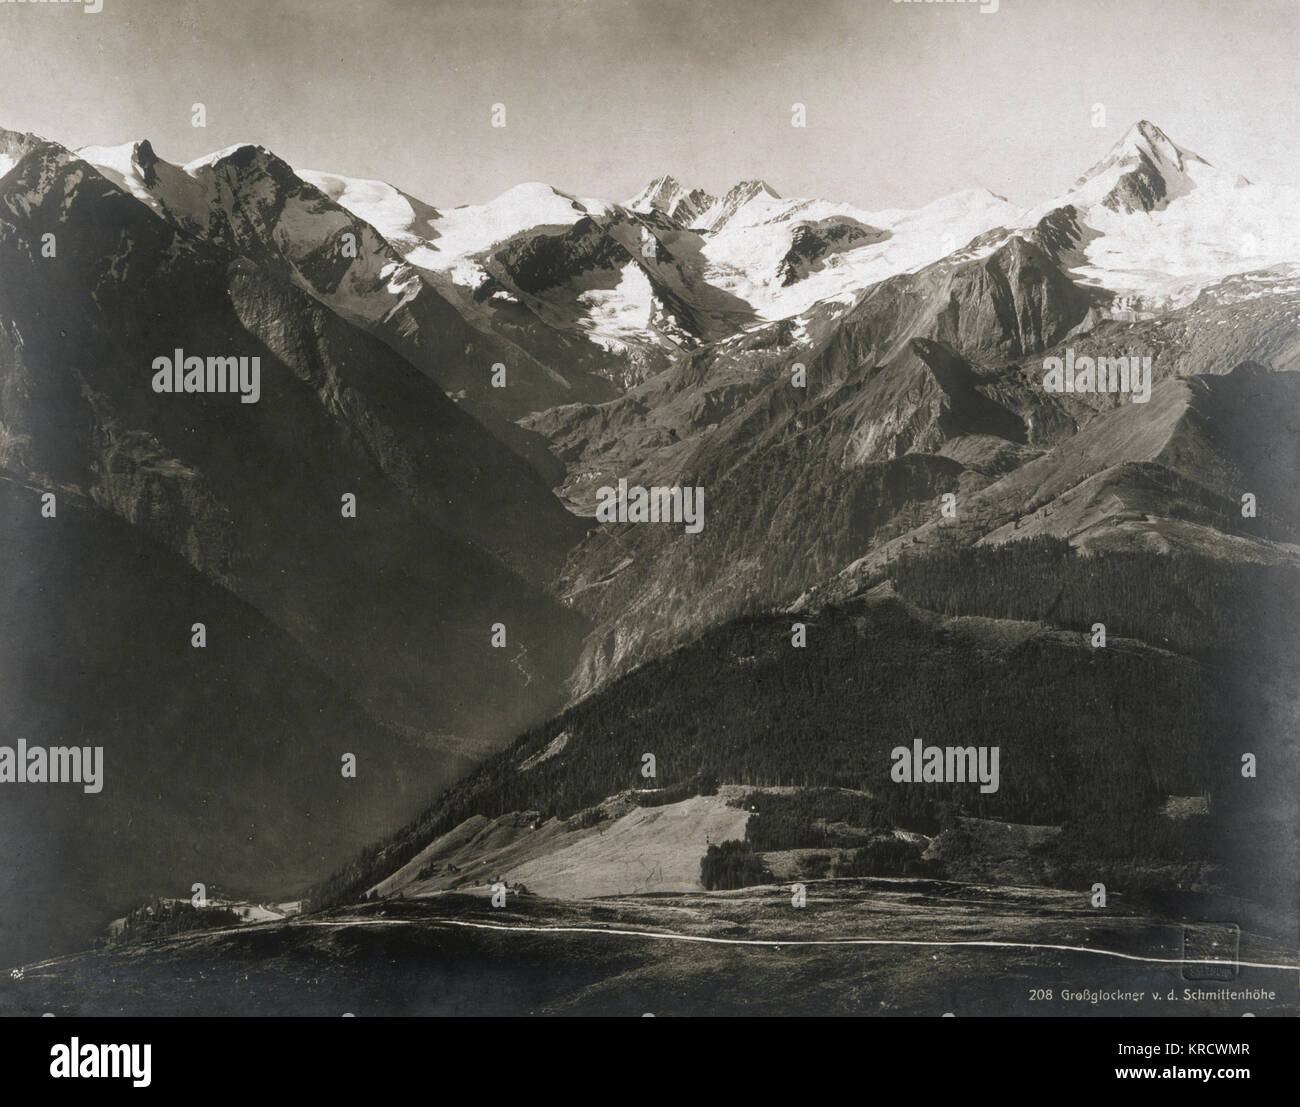 Paisaje: los Alpes austriacos, incluido el monte Glockner fecha: De principios de siglo XX. Foto de stock